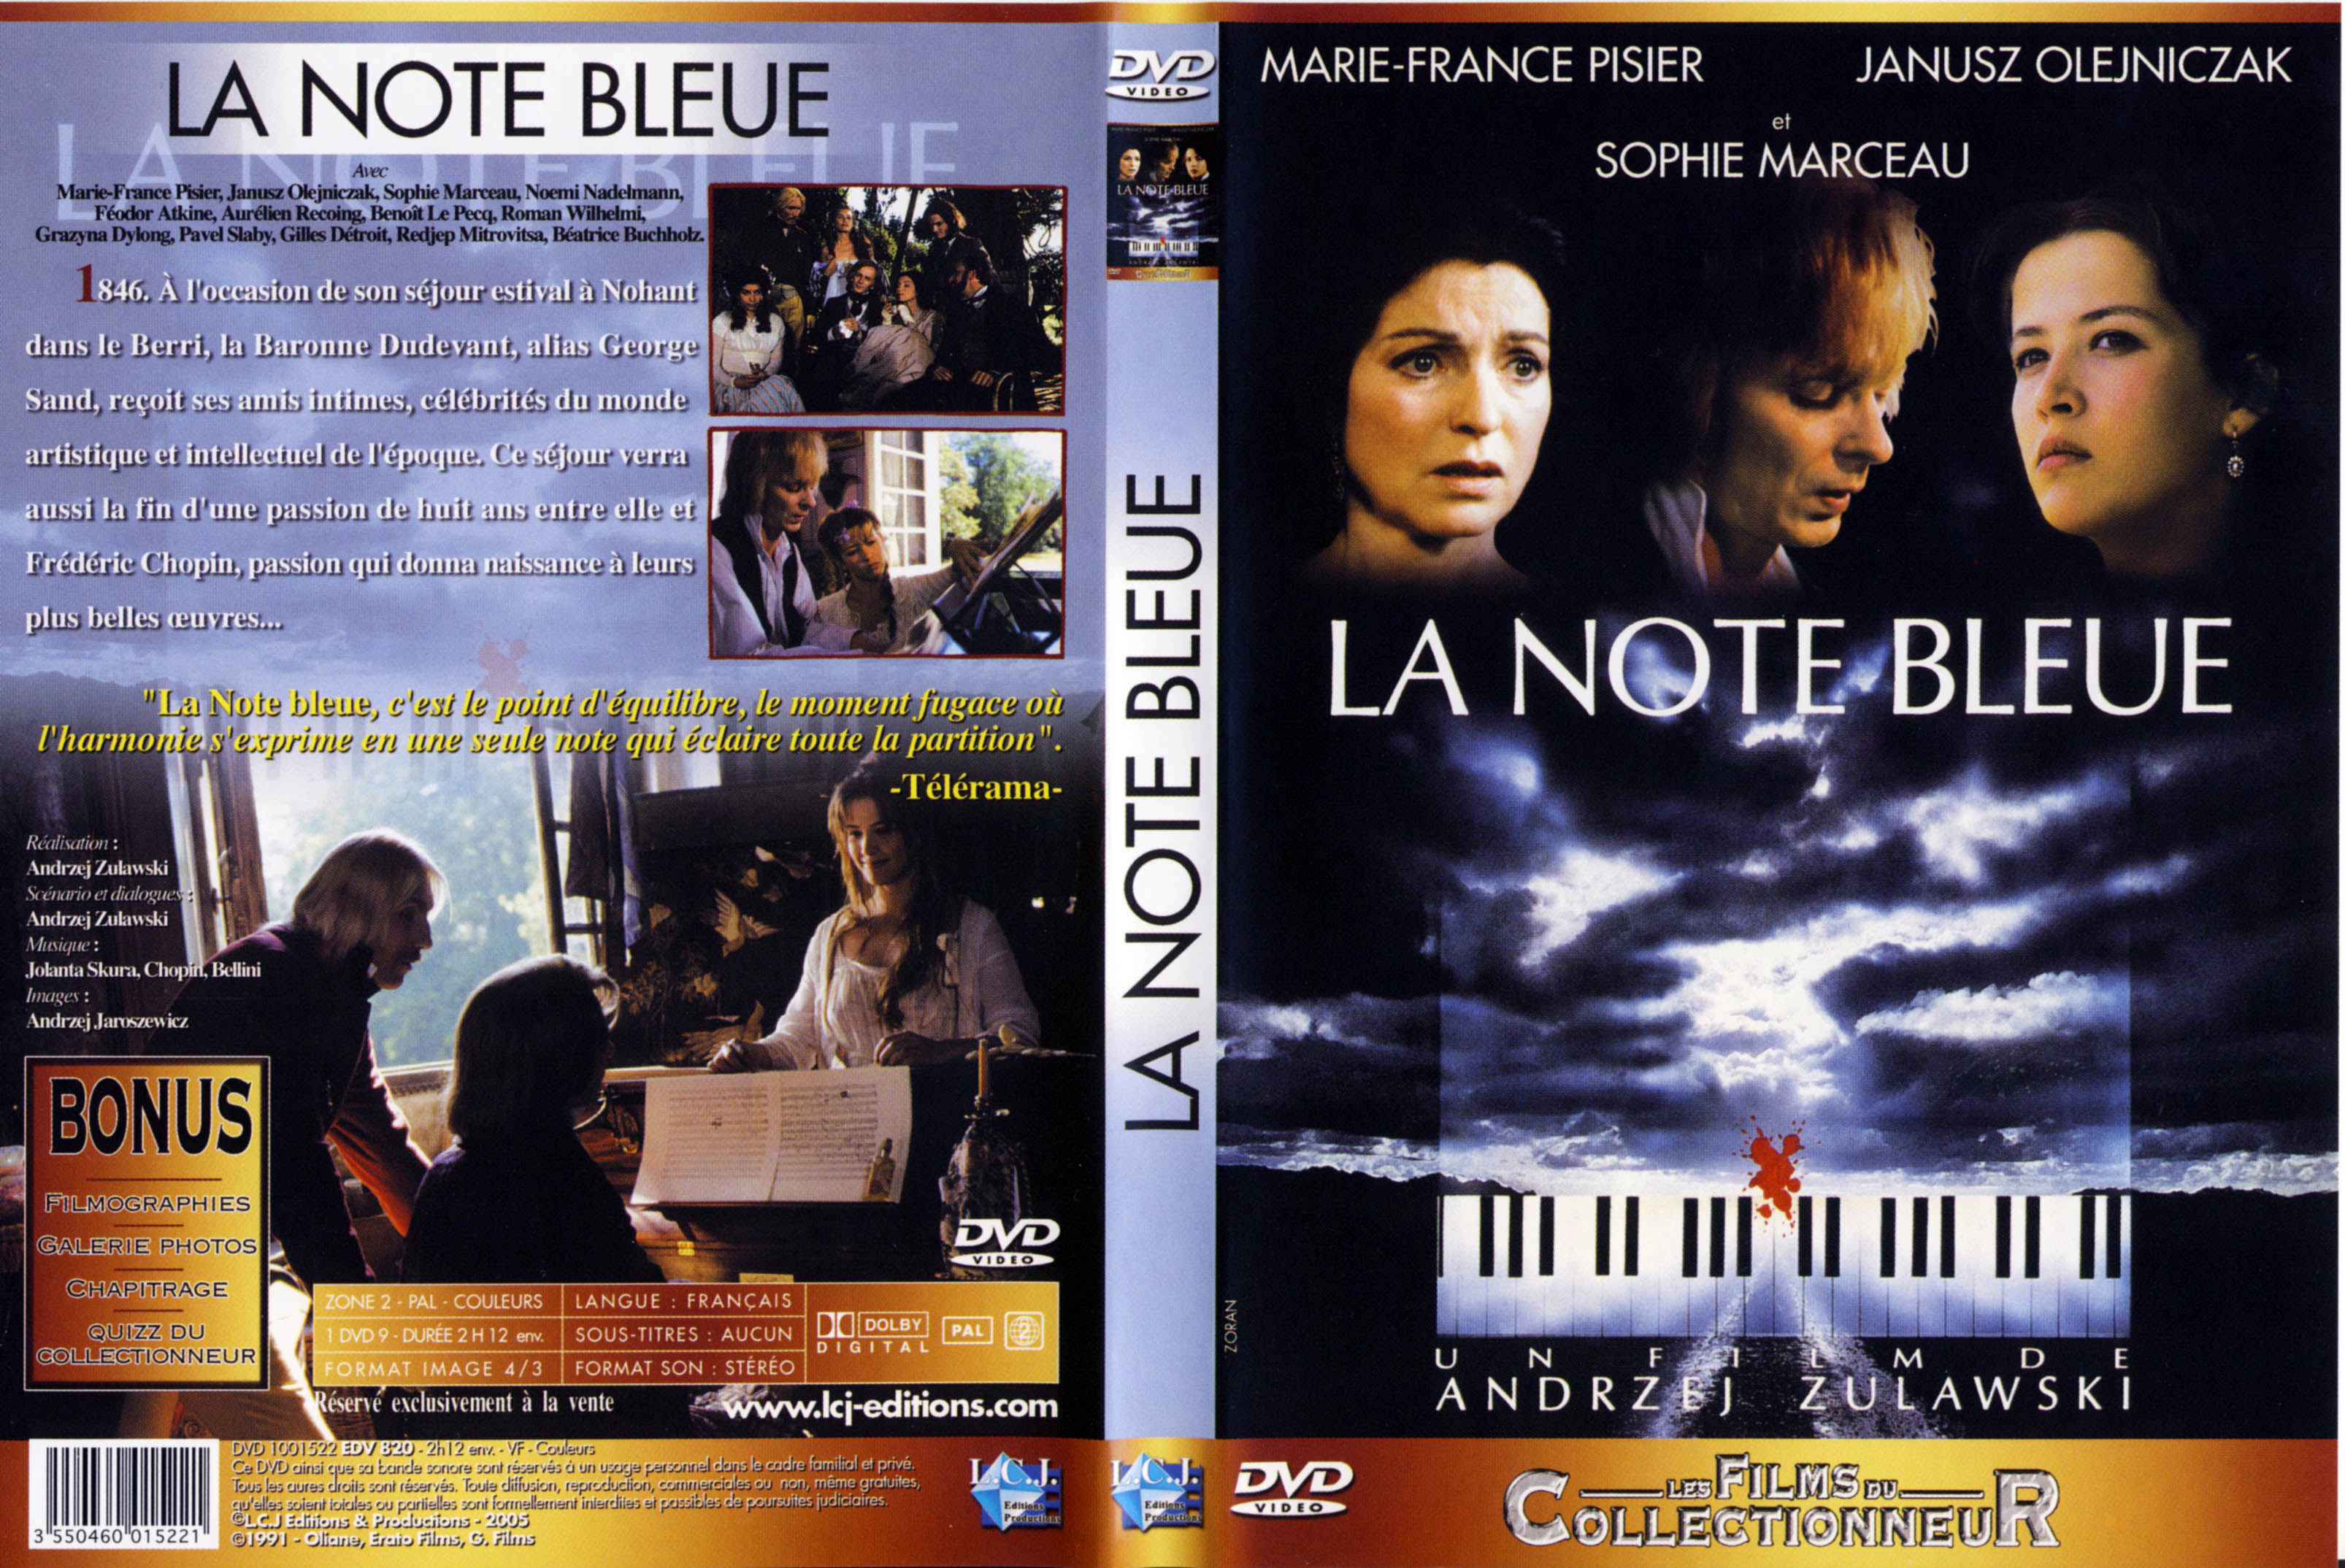 Jaquette DVD La note bleue